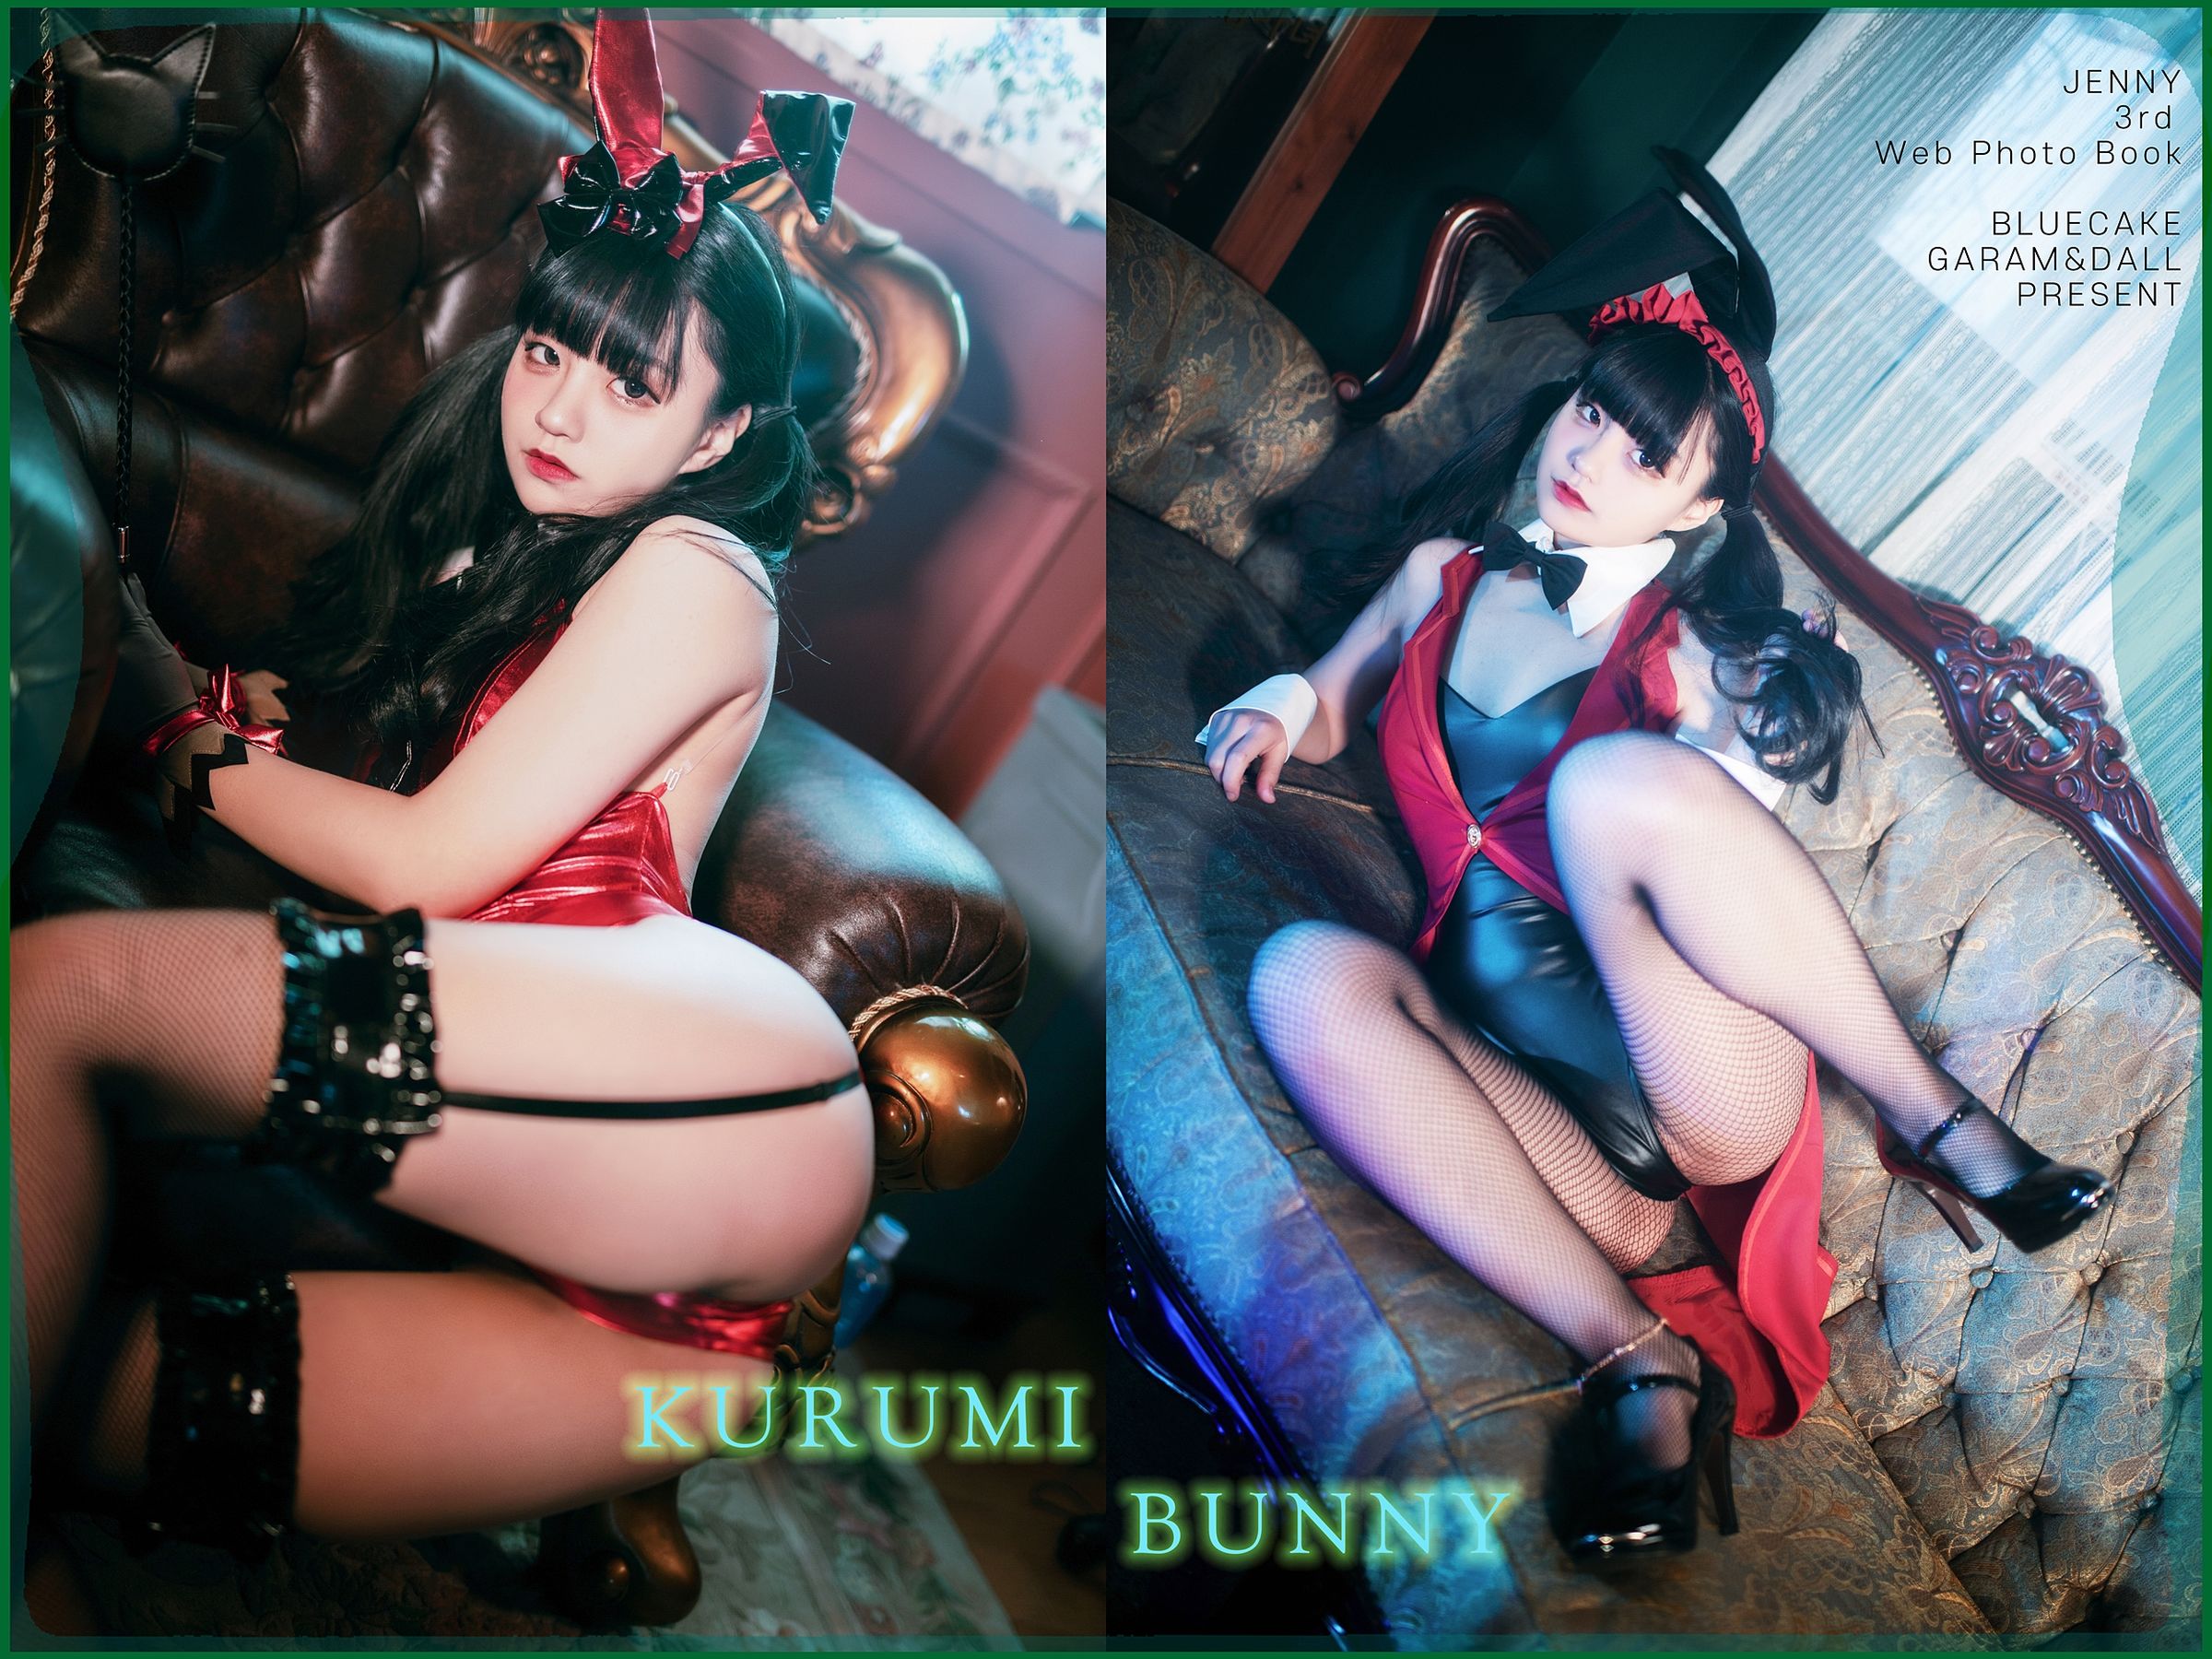 [BLUECAKE]  Jenny - Kurumi Bunny